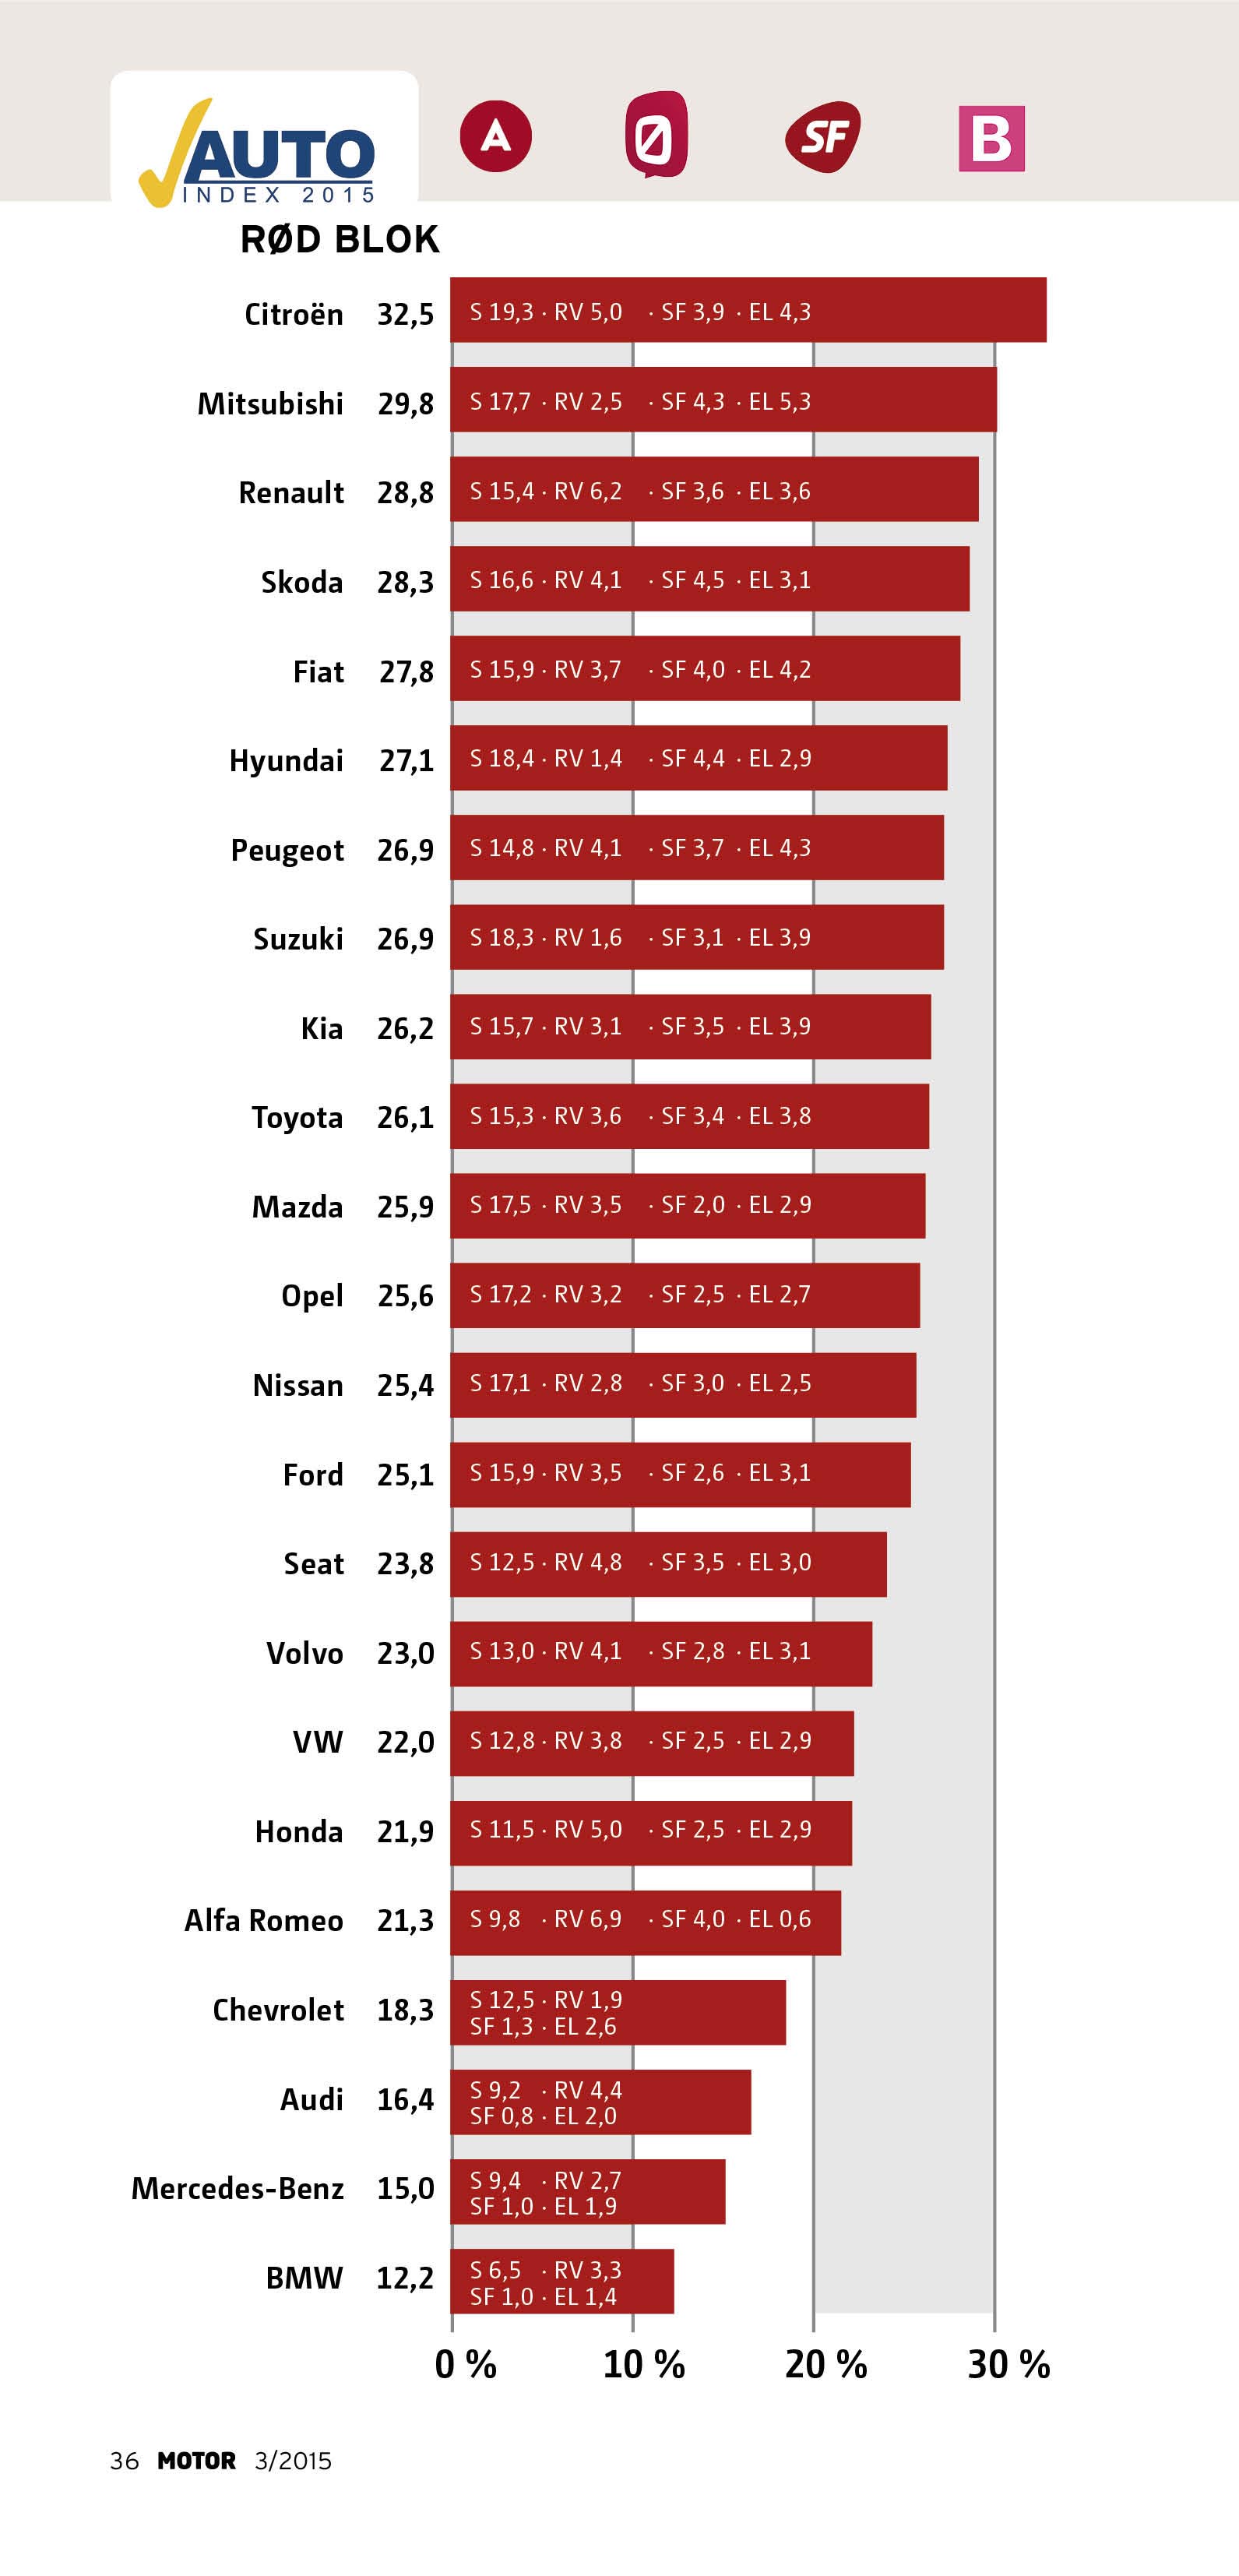 Tallene ud for hvert bilmærke angiver, hvor mange procent af ejerne af det enkelte bilmærke, der stemmer på rød blok. I den røde bjælke kan man se, hvordan stemmerne fordeler sig på de enkelte partier. Grafik: Motor/ Anders Grønning